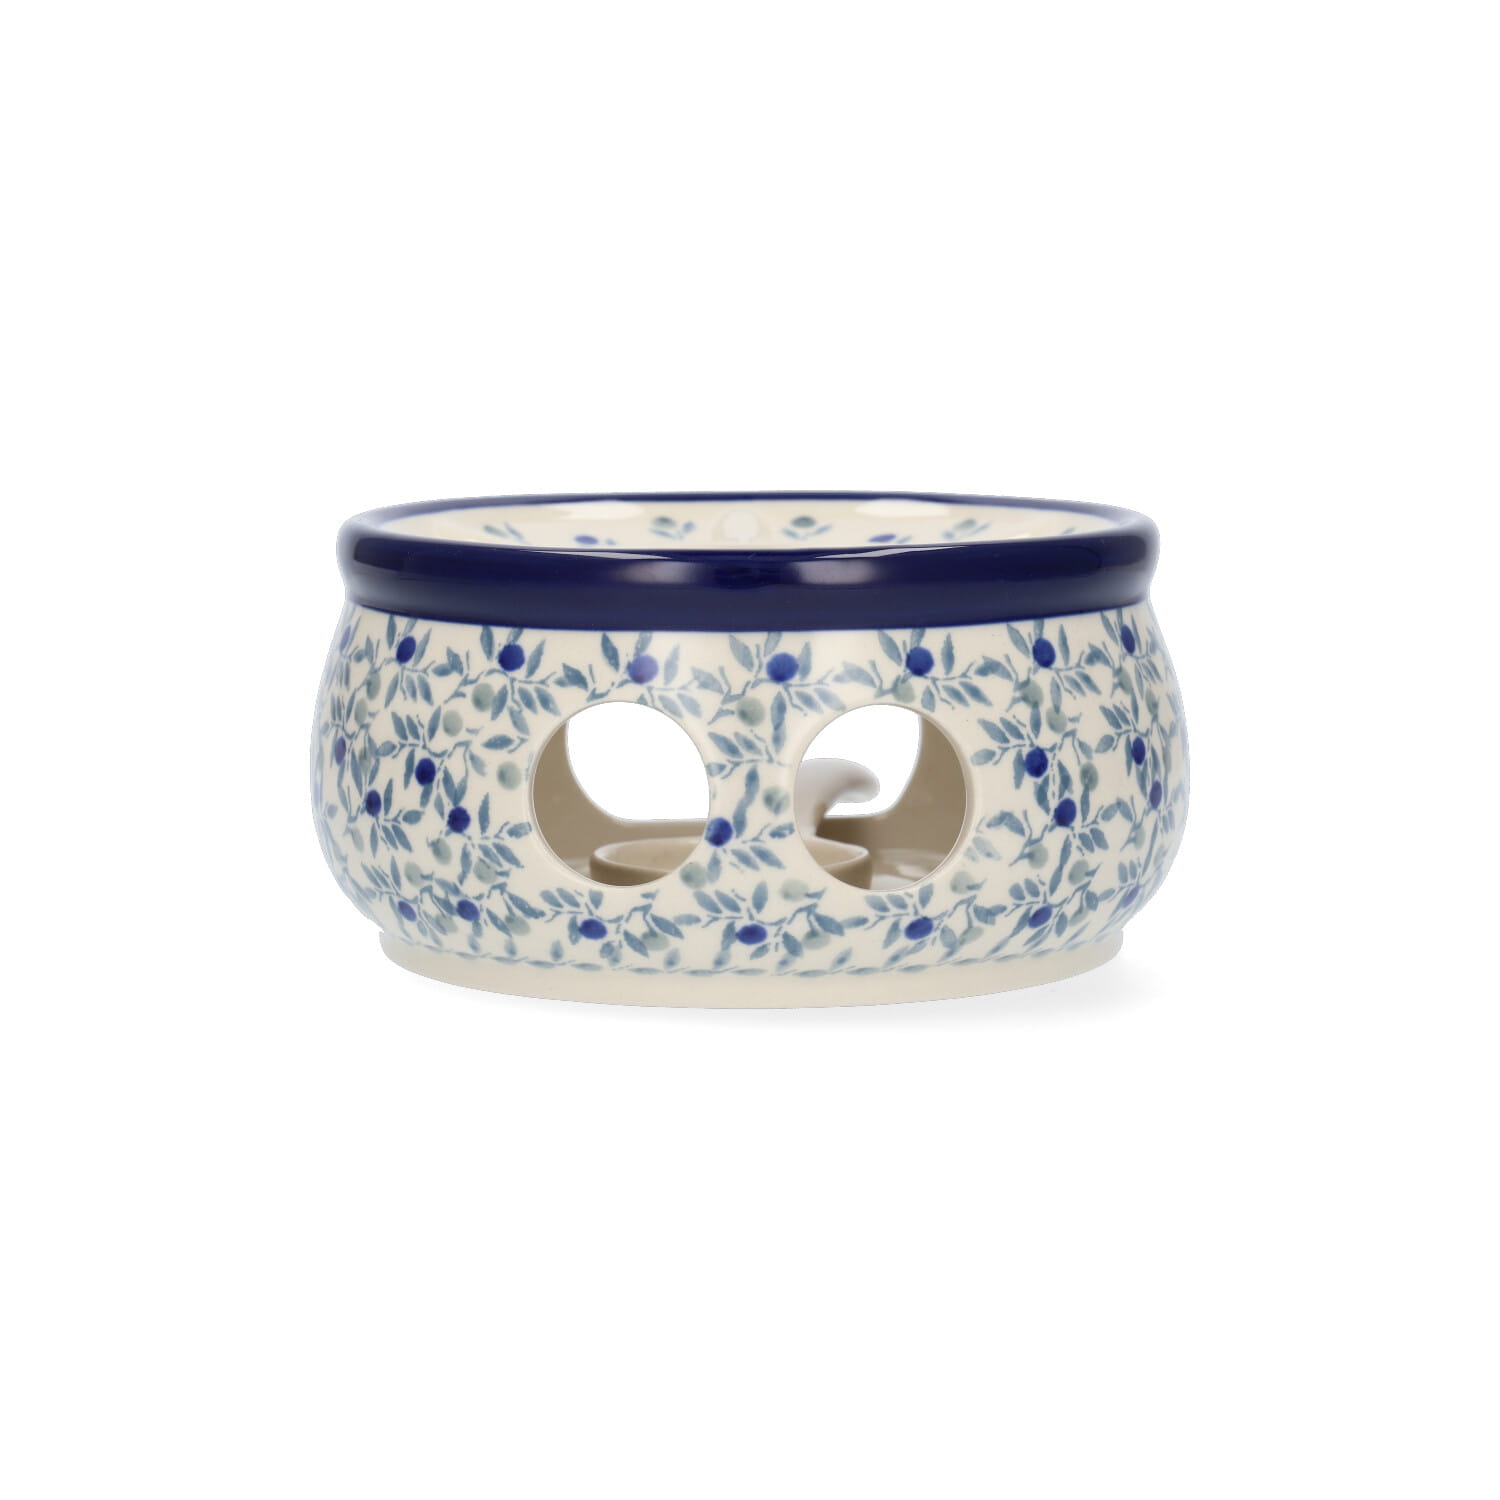 Bunzlau Castle Keramik Stövchen für Teekanne 1,3 l und 2,0 l - Blue Olive